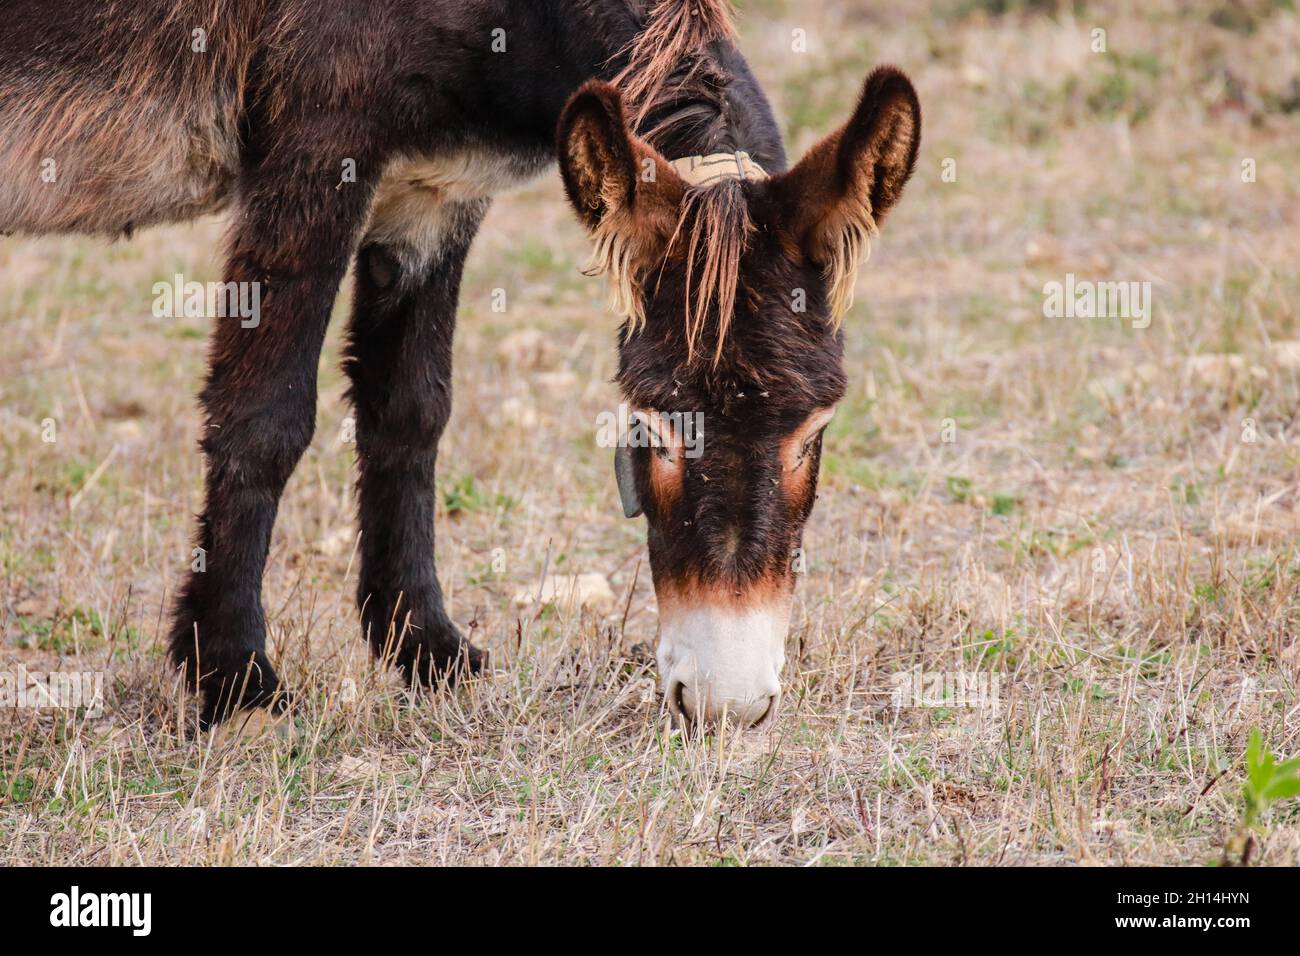 Donkey head close up Stock Photo